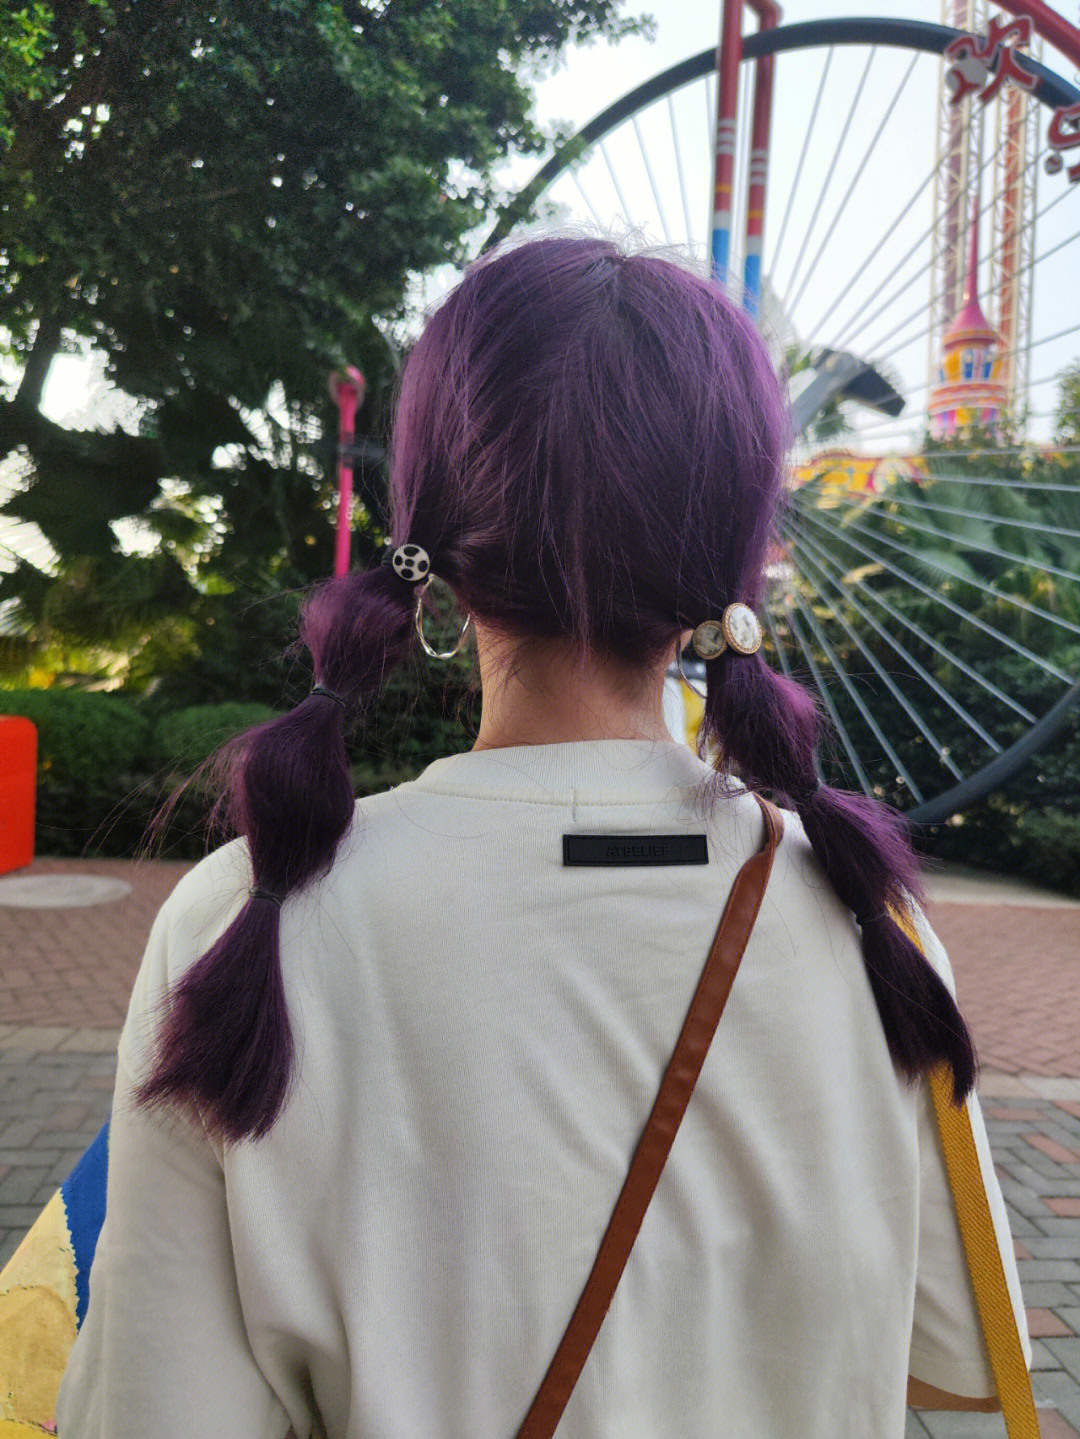 机缘巧合染了这个紫发之后,刷小红书,发现好多姐妹都染了这个紫发啊!